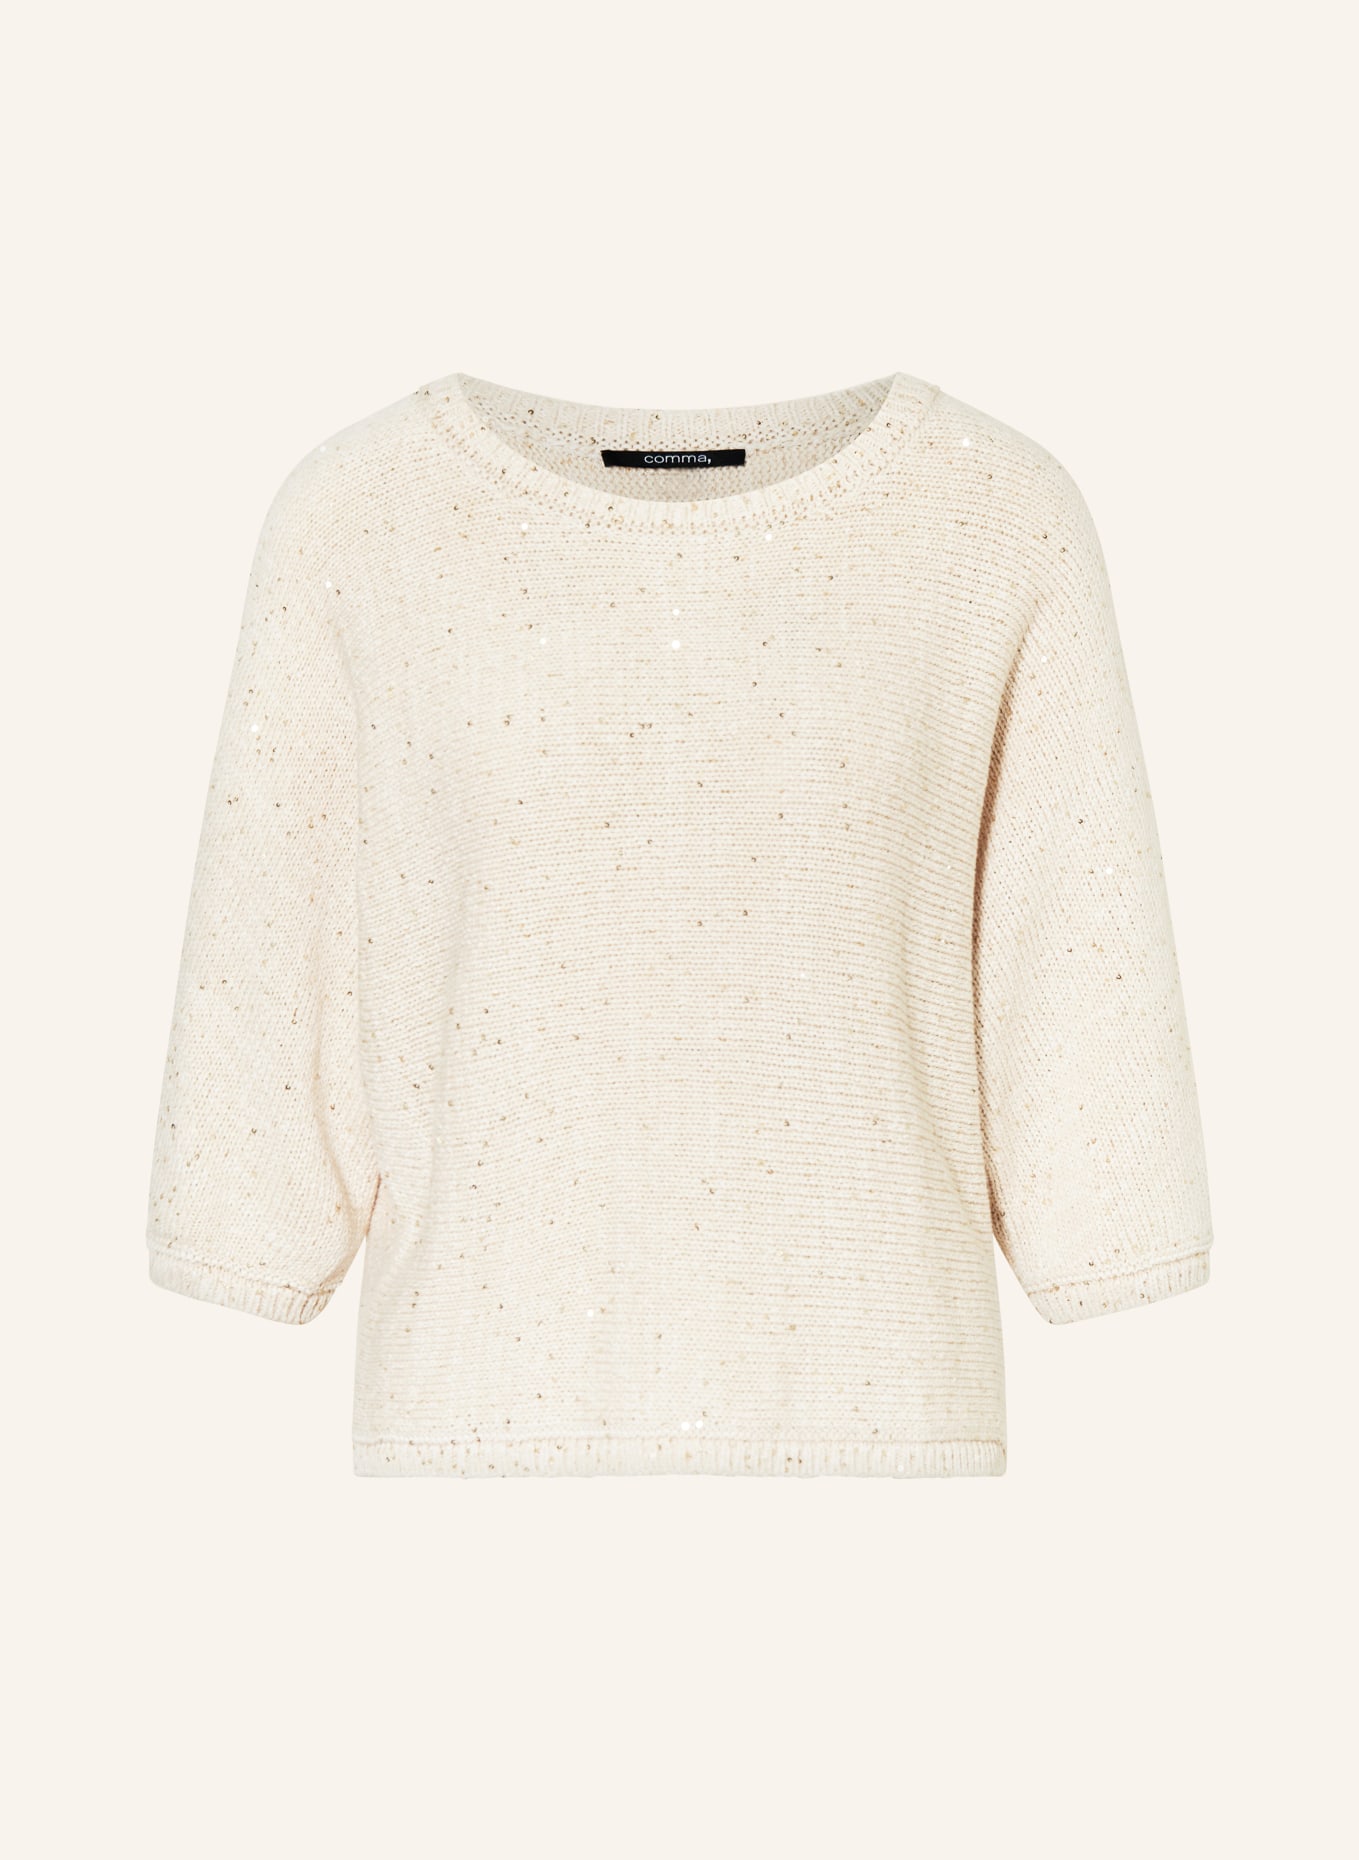 comma Sweater with glitter thread, Color: CREAM (Image 1)